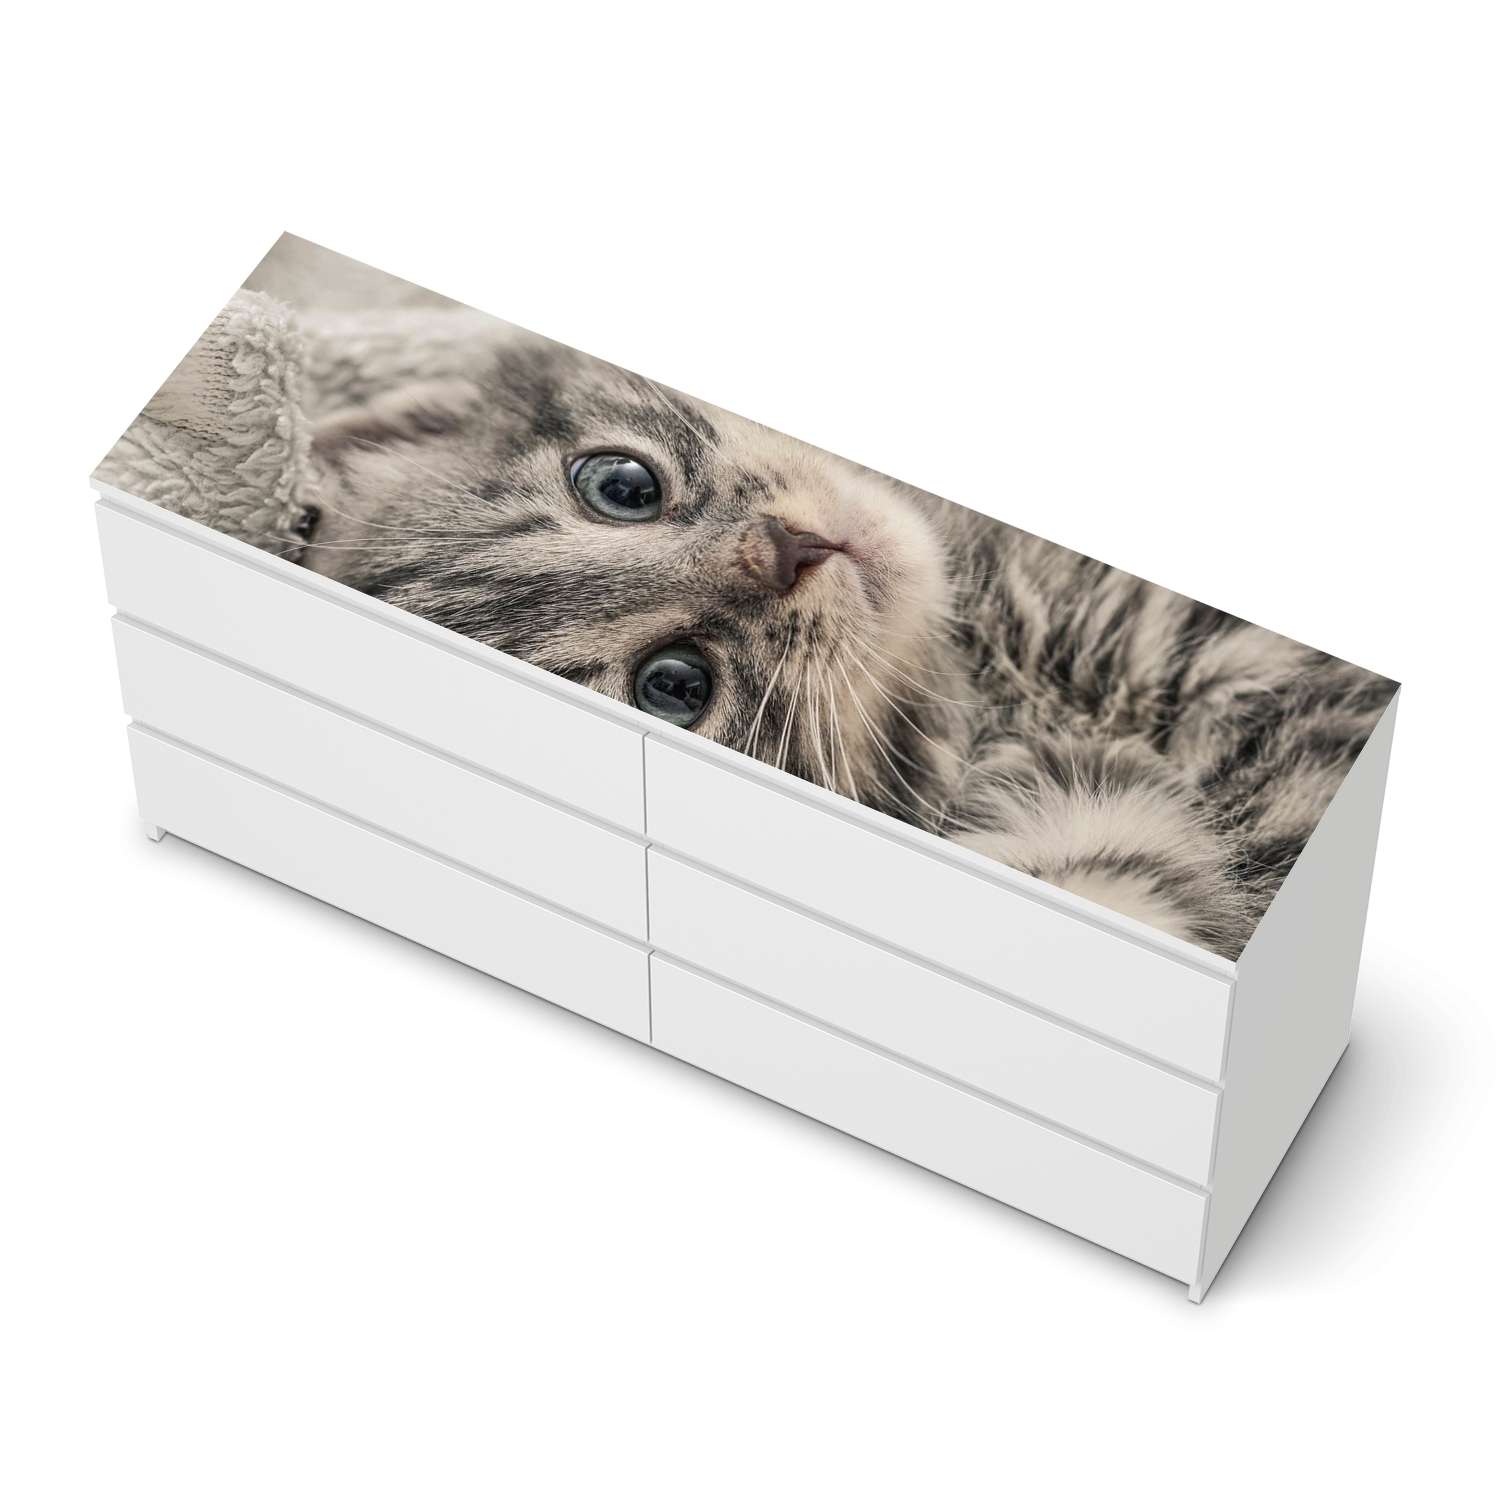 M?belfolie IKEA Malm Kommode 6 Schubladen (breit) [oben] - Design: Kitty the Cat von creatisto